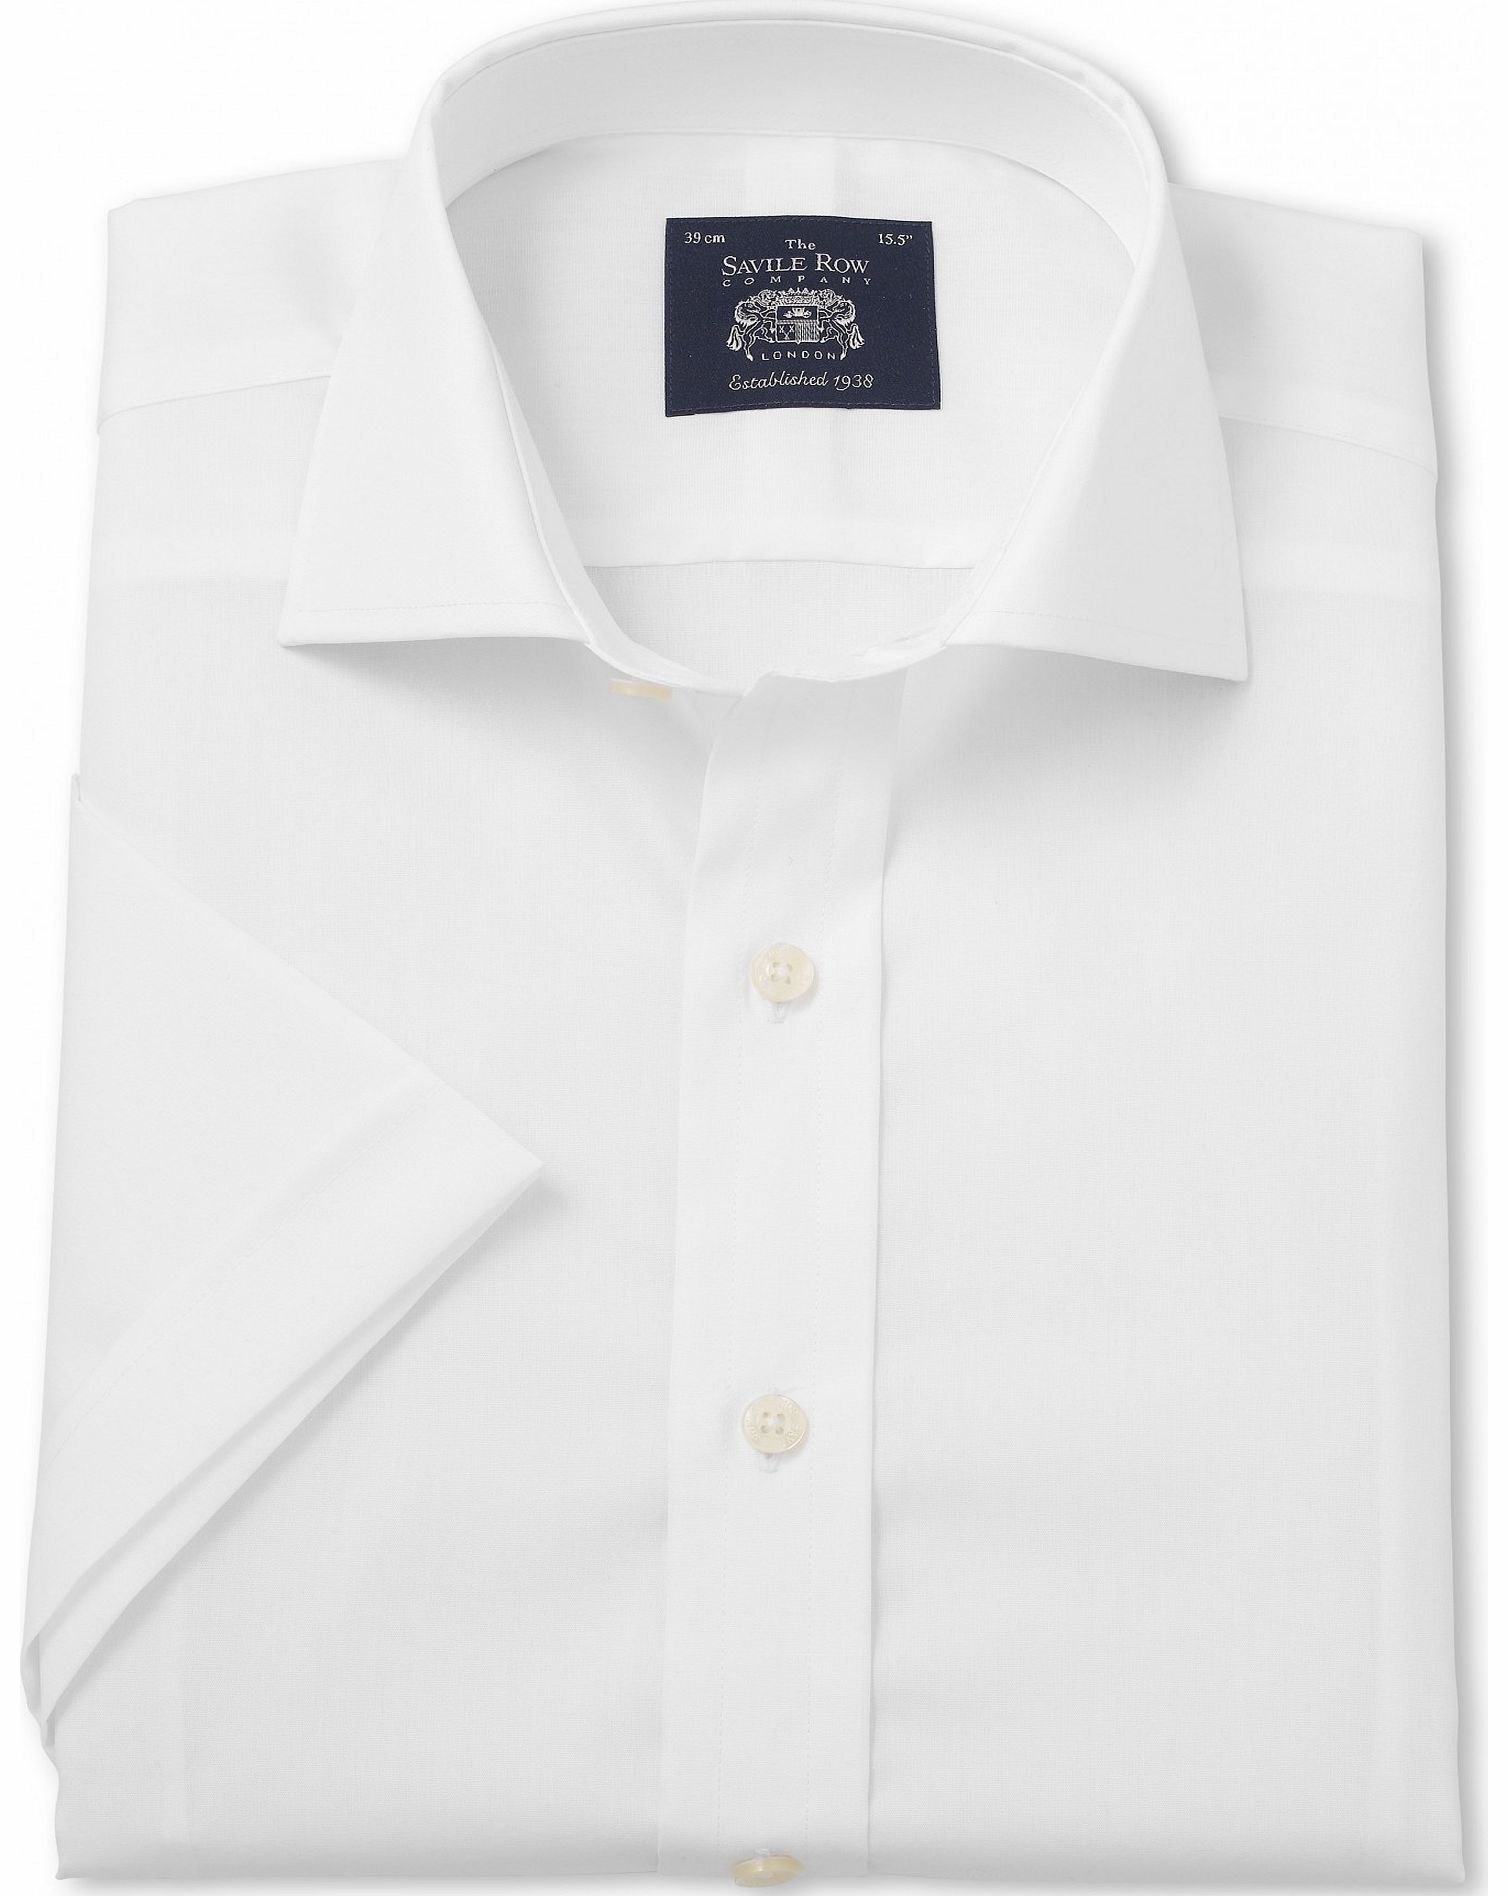 Savile Row Company White Slim Fit Short Sleeve Shirt 15`` Short